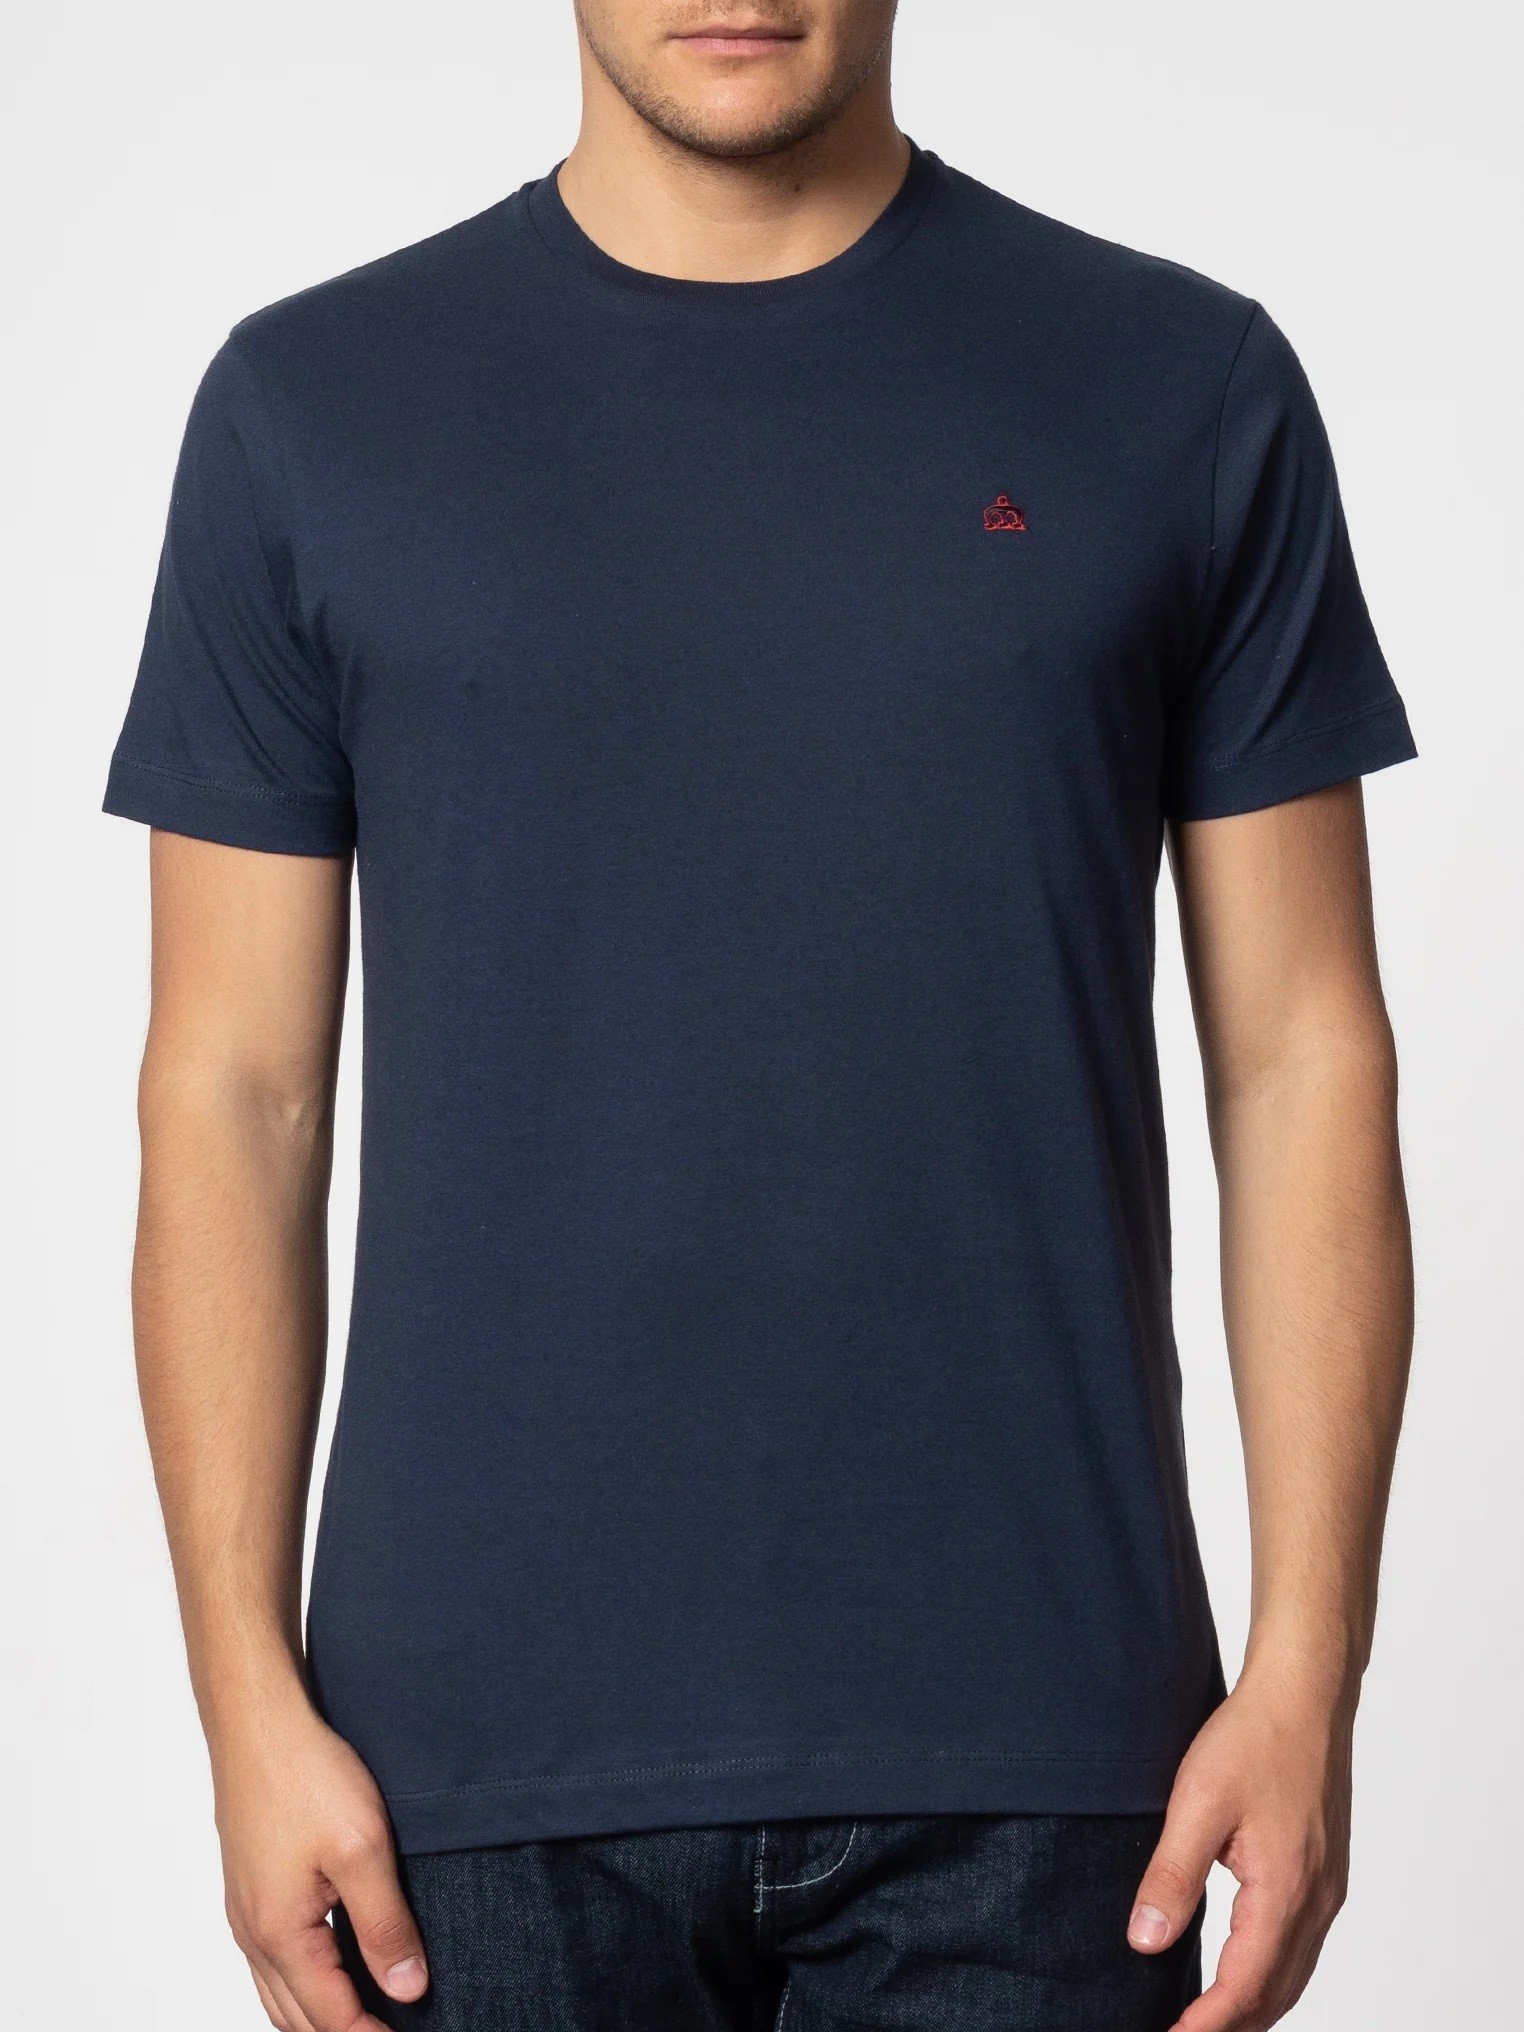 Однотонная мужская футболка Merc Keyport с вышитым на груди контрастным логотипом Корона, темно синяя (navy), бренда MERC, купить на официальном сайте